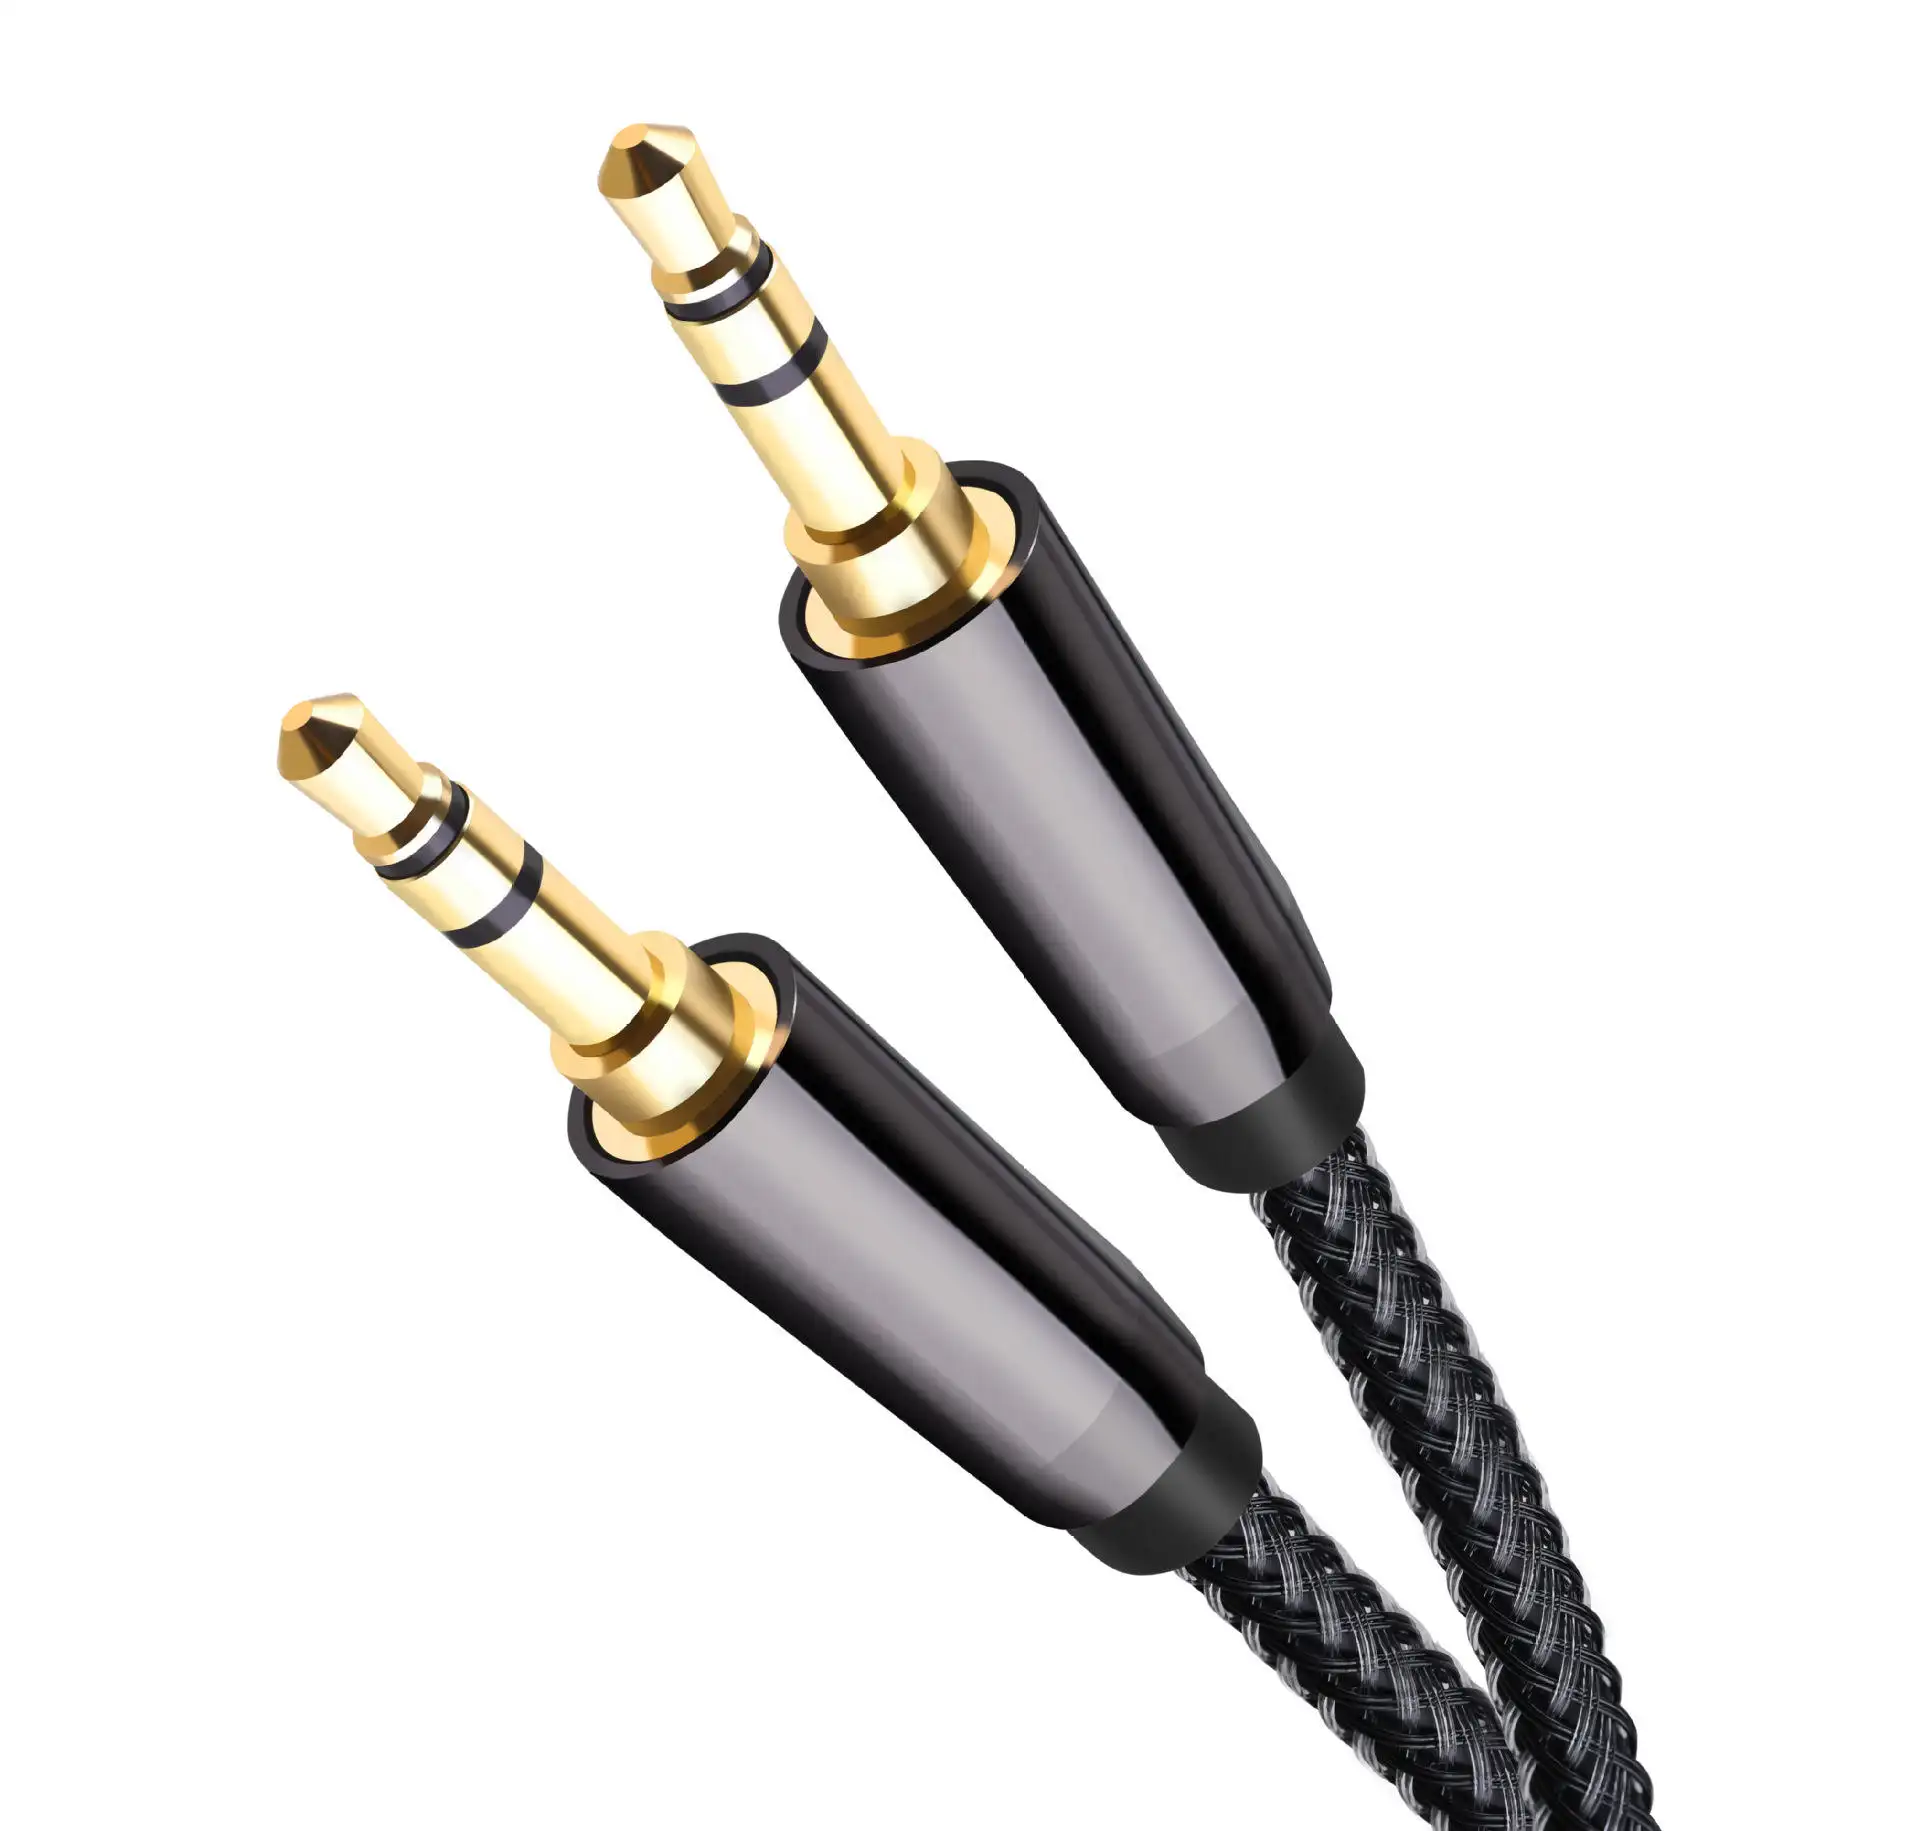 OEM 3,5 a 3,5 cable de audio 3,5mm público a público coche aux auricular cable 3,5 cable de extensión